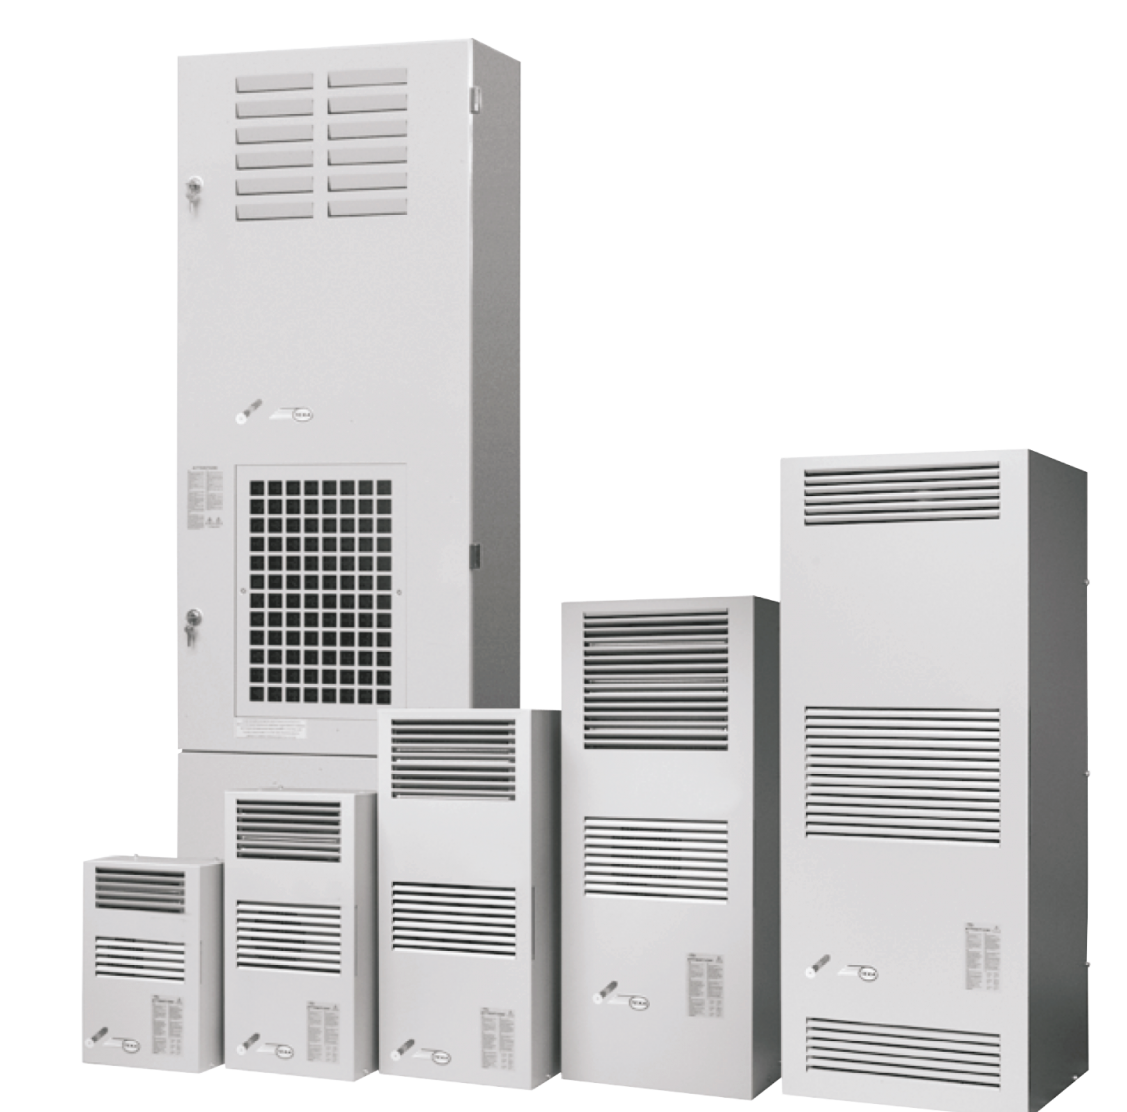 Air conditioner EGOA5 (400V, 3~50Hz, 14800W)